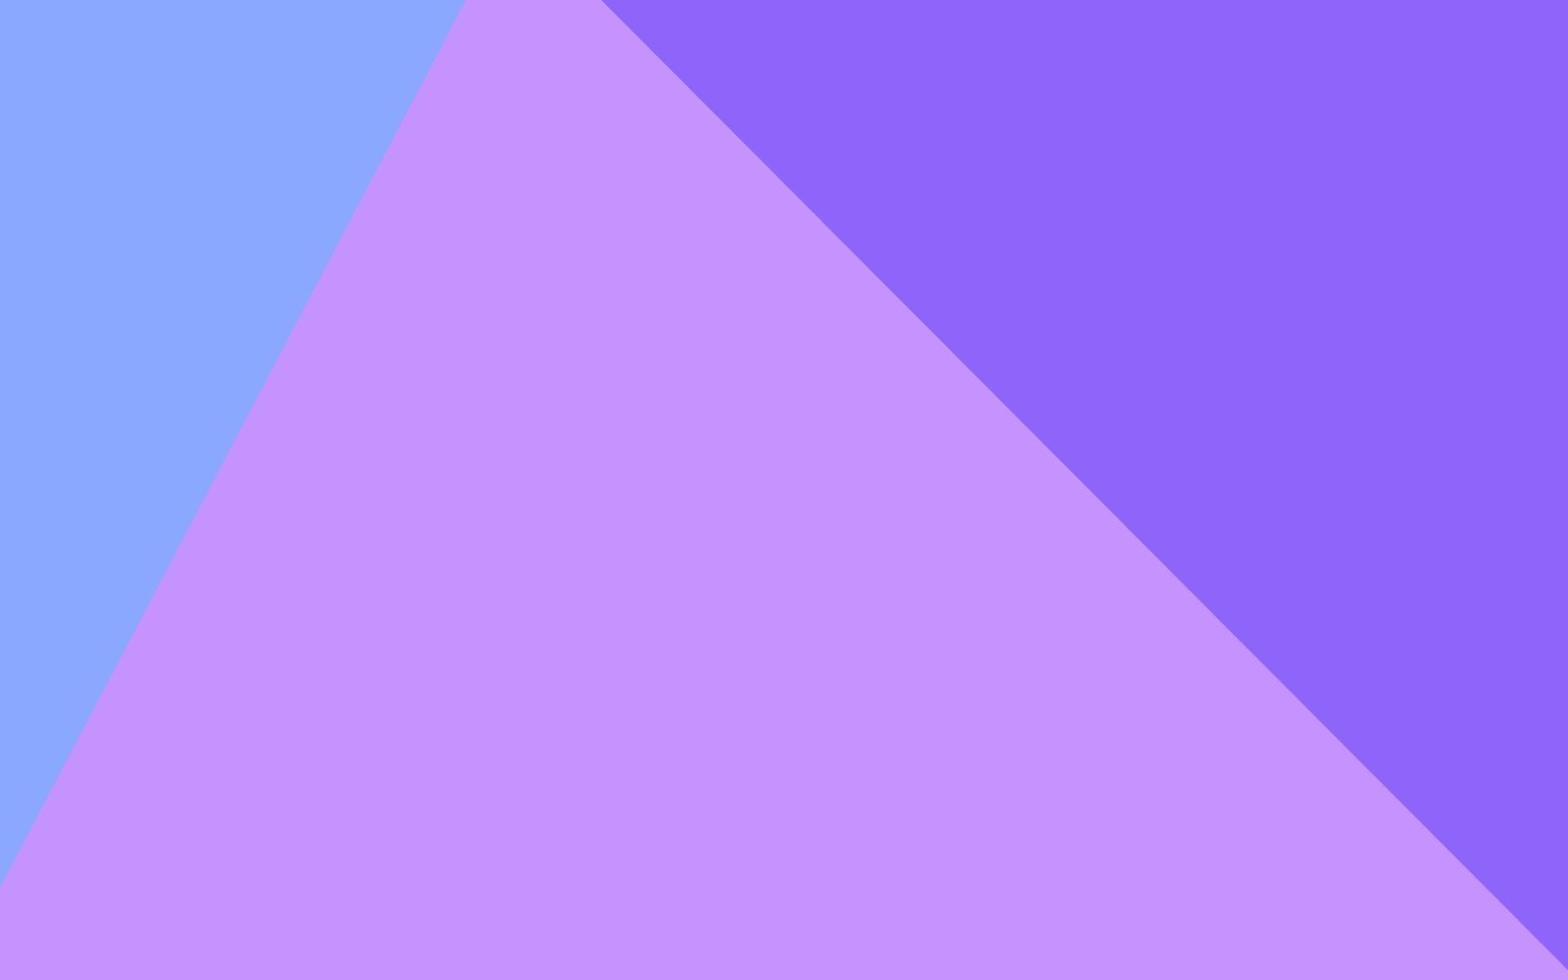 motivo a triangolo sfocato vettoriale rosa chiaro, blu.